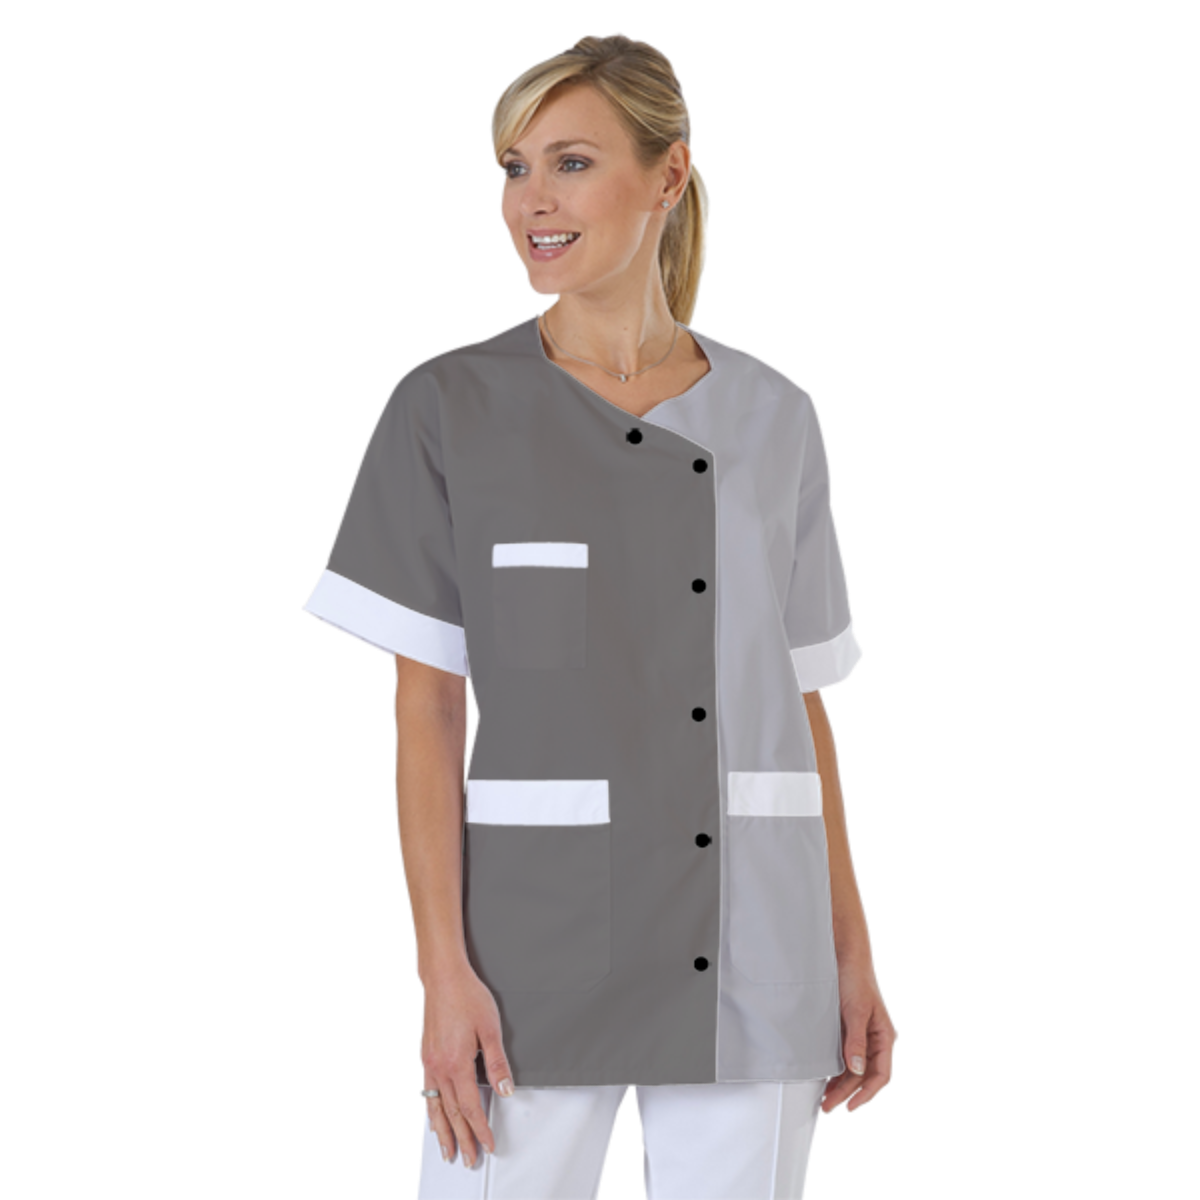 blouse-infirmiere-personnalise-col-trapeze acheté - par Catherine - le 21-06-2020